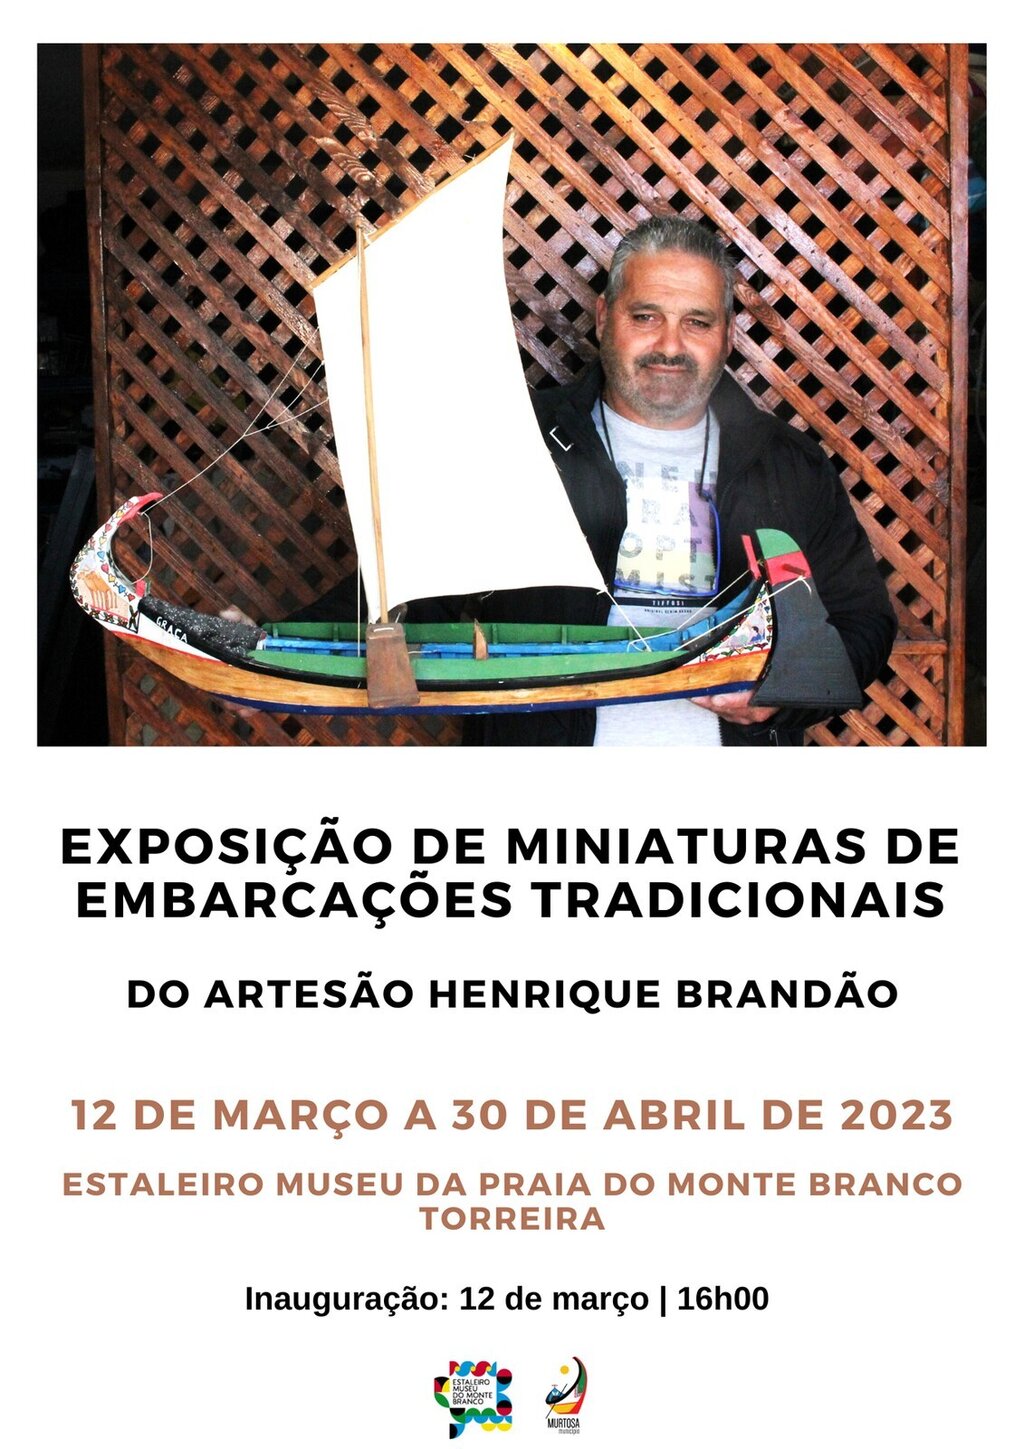 HENRIQUE BRANDÃO EXPÕE MINIATURAS DE EMBARCAÇÕES TRADICIONAIS NO ESTALEIRO-MUSEU DO MONTE BRANCO